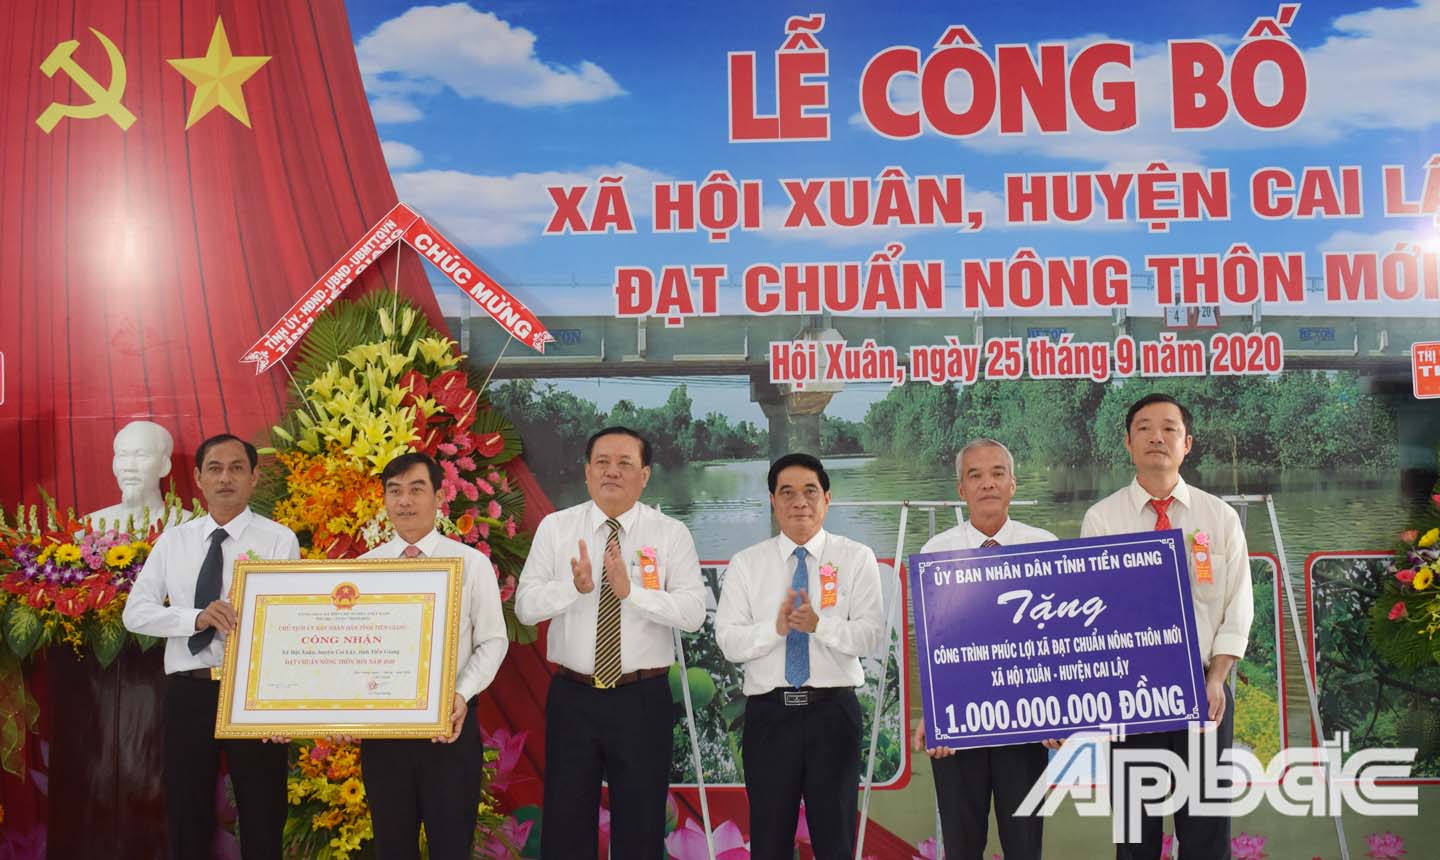 Đồng chí Lê Văn Nghĩa và đồng chí Nguyễn Văn Nhã trao tặng bằng công nhận đạt chuẩn NTM của UBND tỉnh và công trình phúc lợi 1 tỷ đồng cho UBND xã Long Bình.  